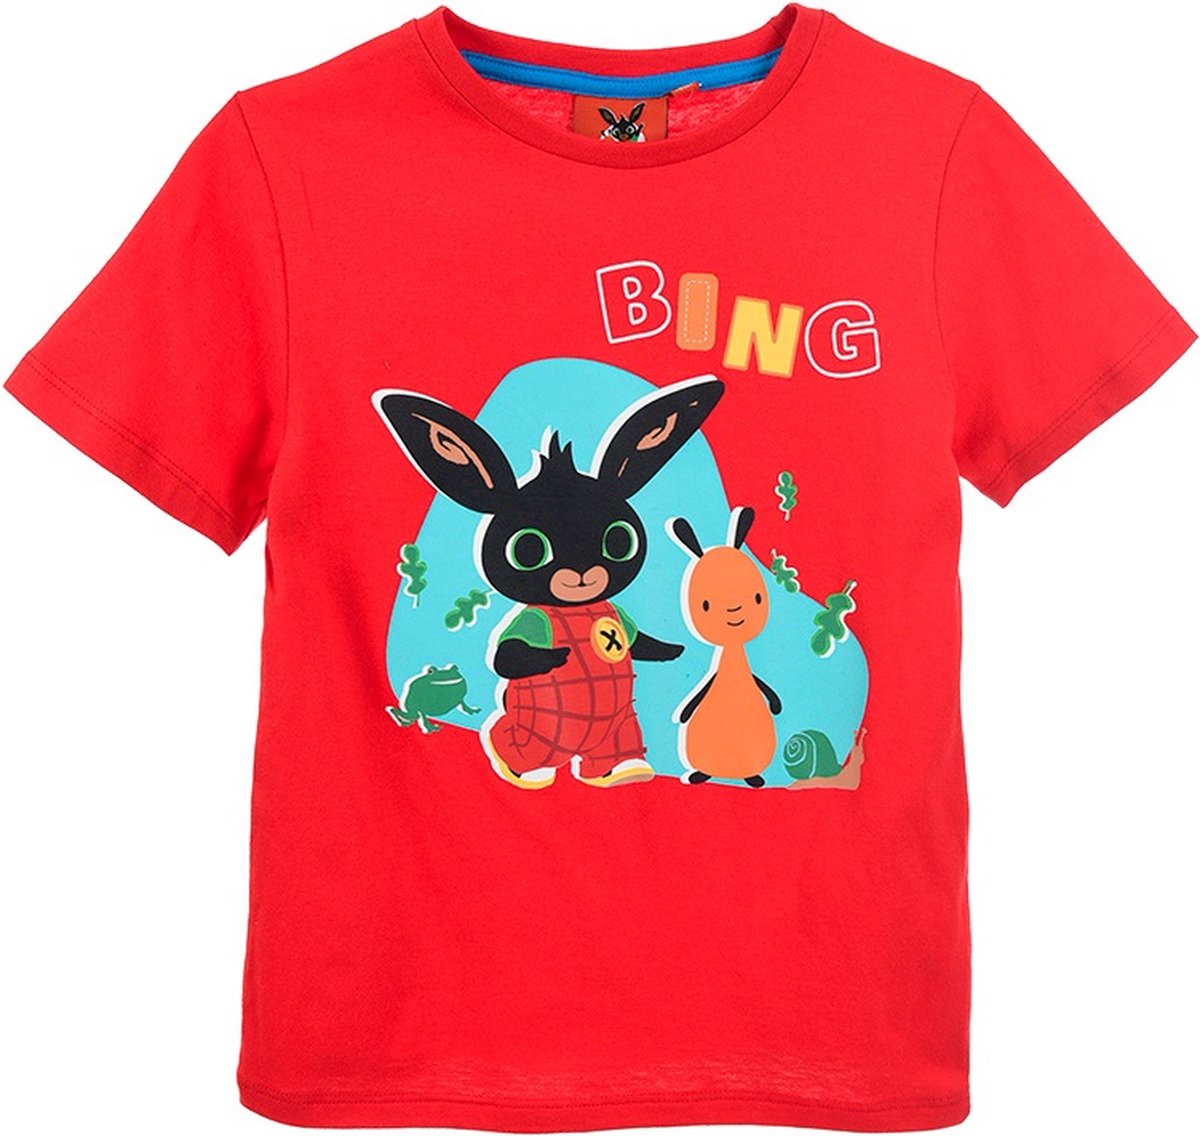 Bing Bunny - T-shirt Bing Bunny - rood - maat 116